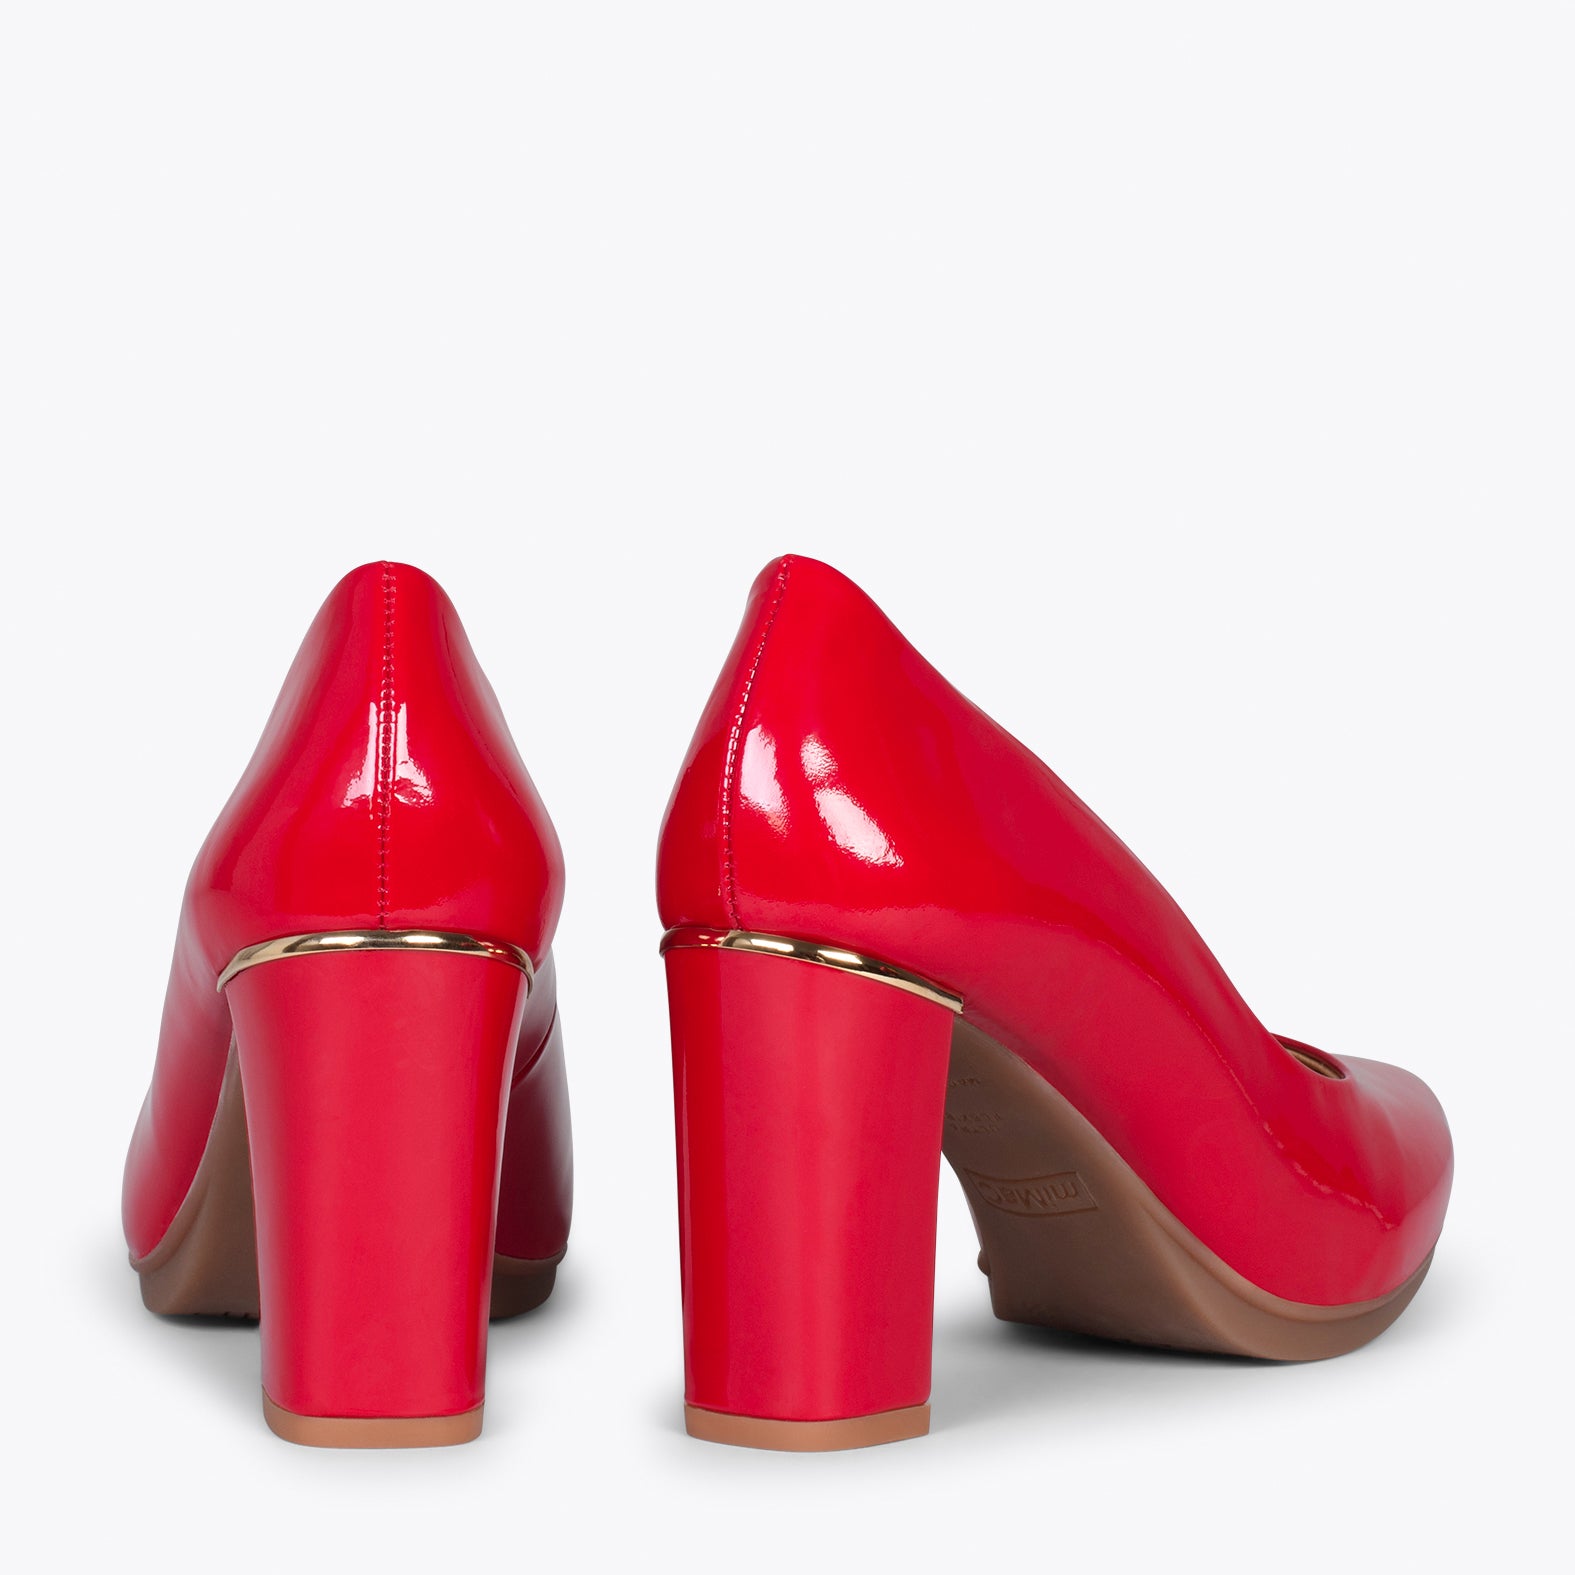 URBAN CHAROL – Zapatos de tacón de charol con adorno metálico ROJO